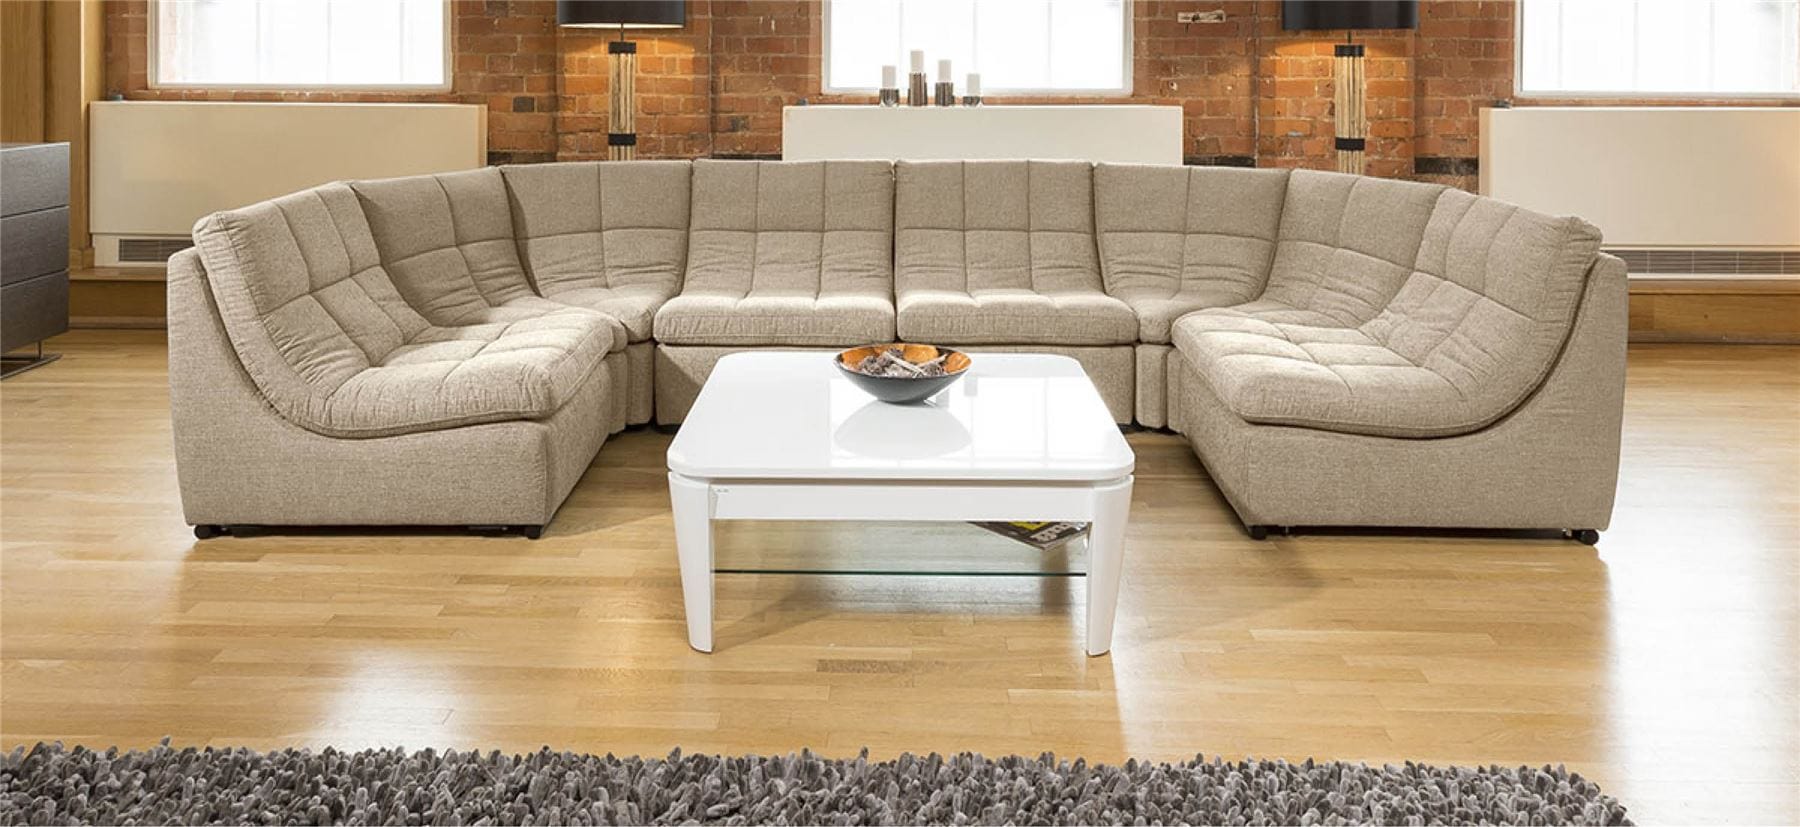 Quatropi Quatropi Designer Relax Range U Shaped Sofa Luxury 6 Seater U3